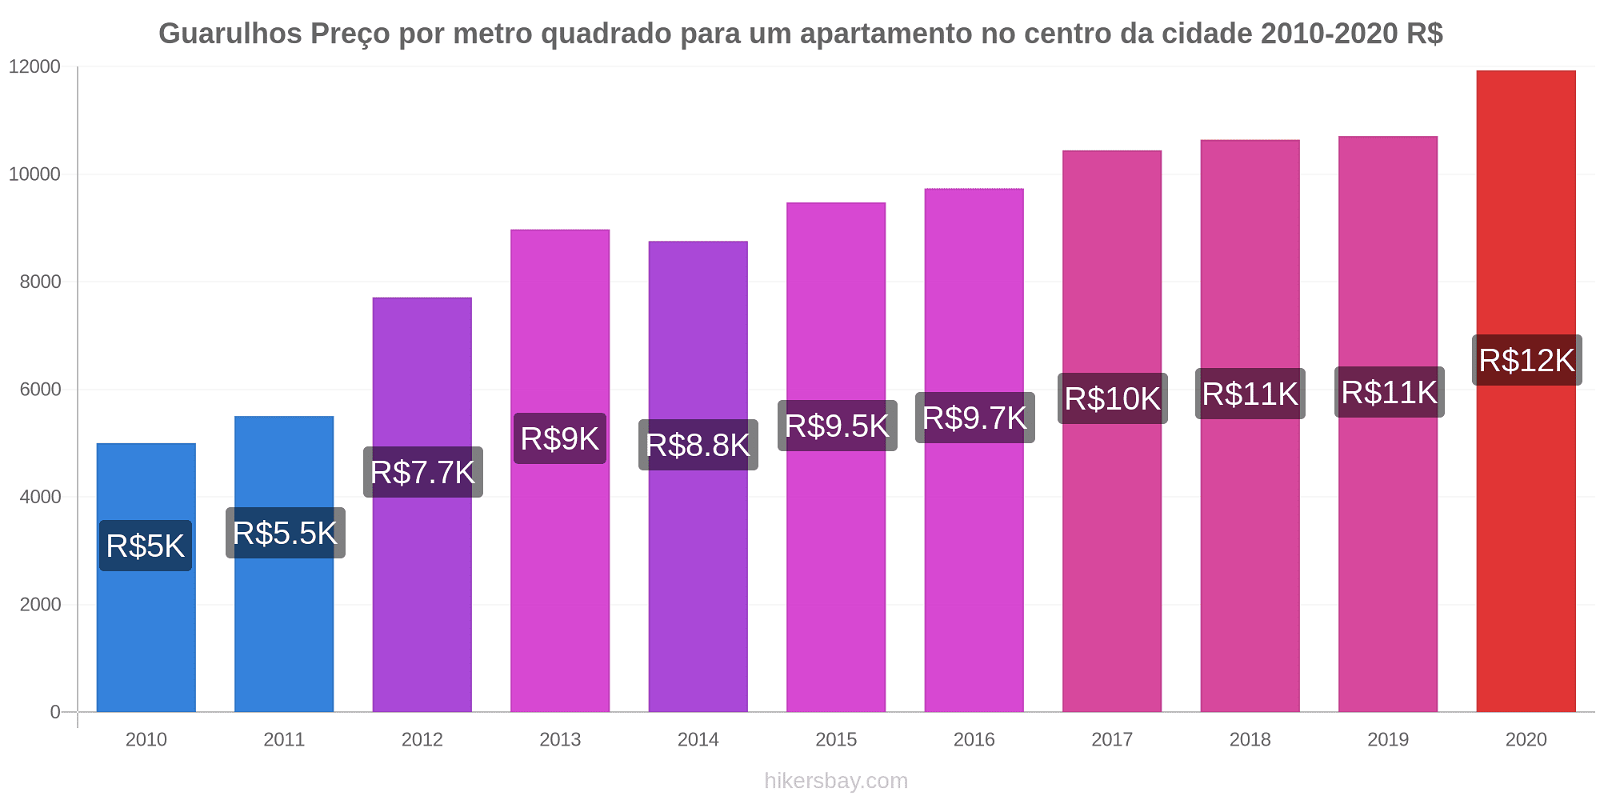 Guarulhos variação de preço Preço por metro quadrado para um apartamento no centro da cidade hikersbay.com